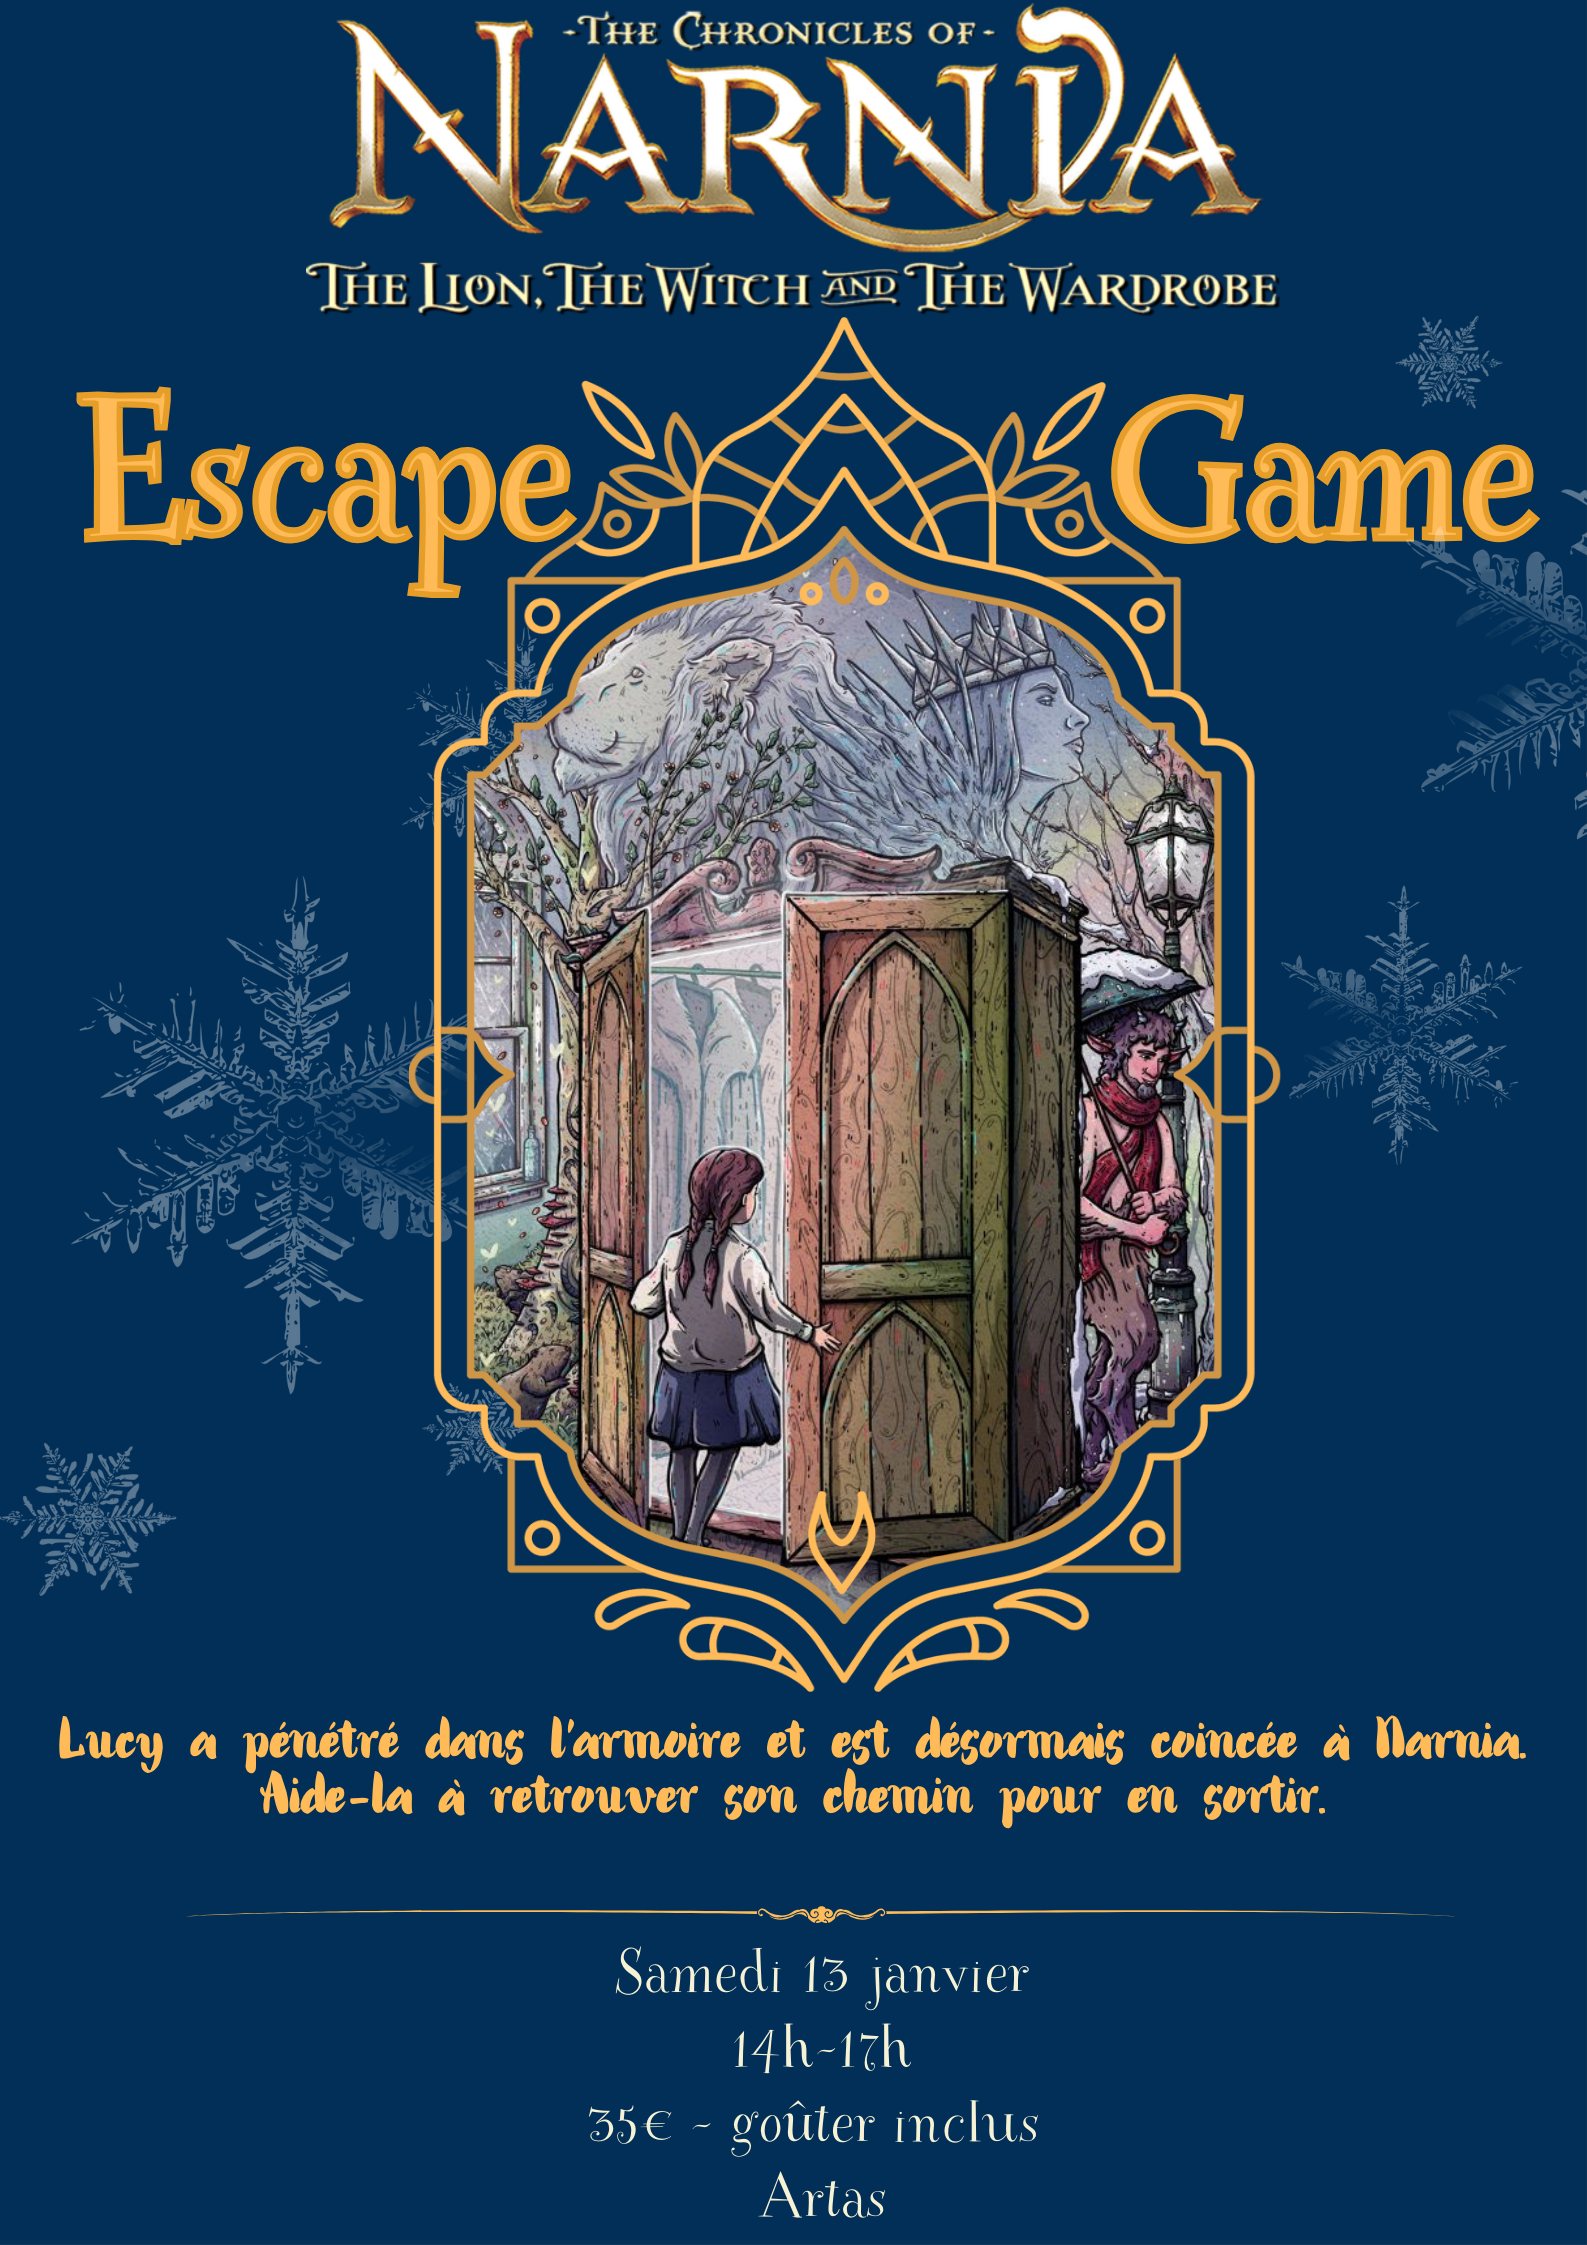 Escape Game Narnia